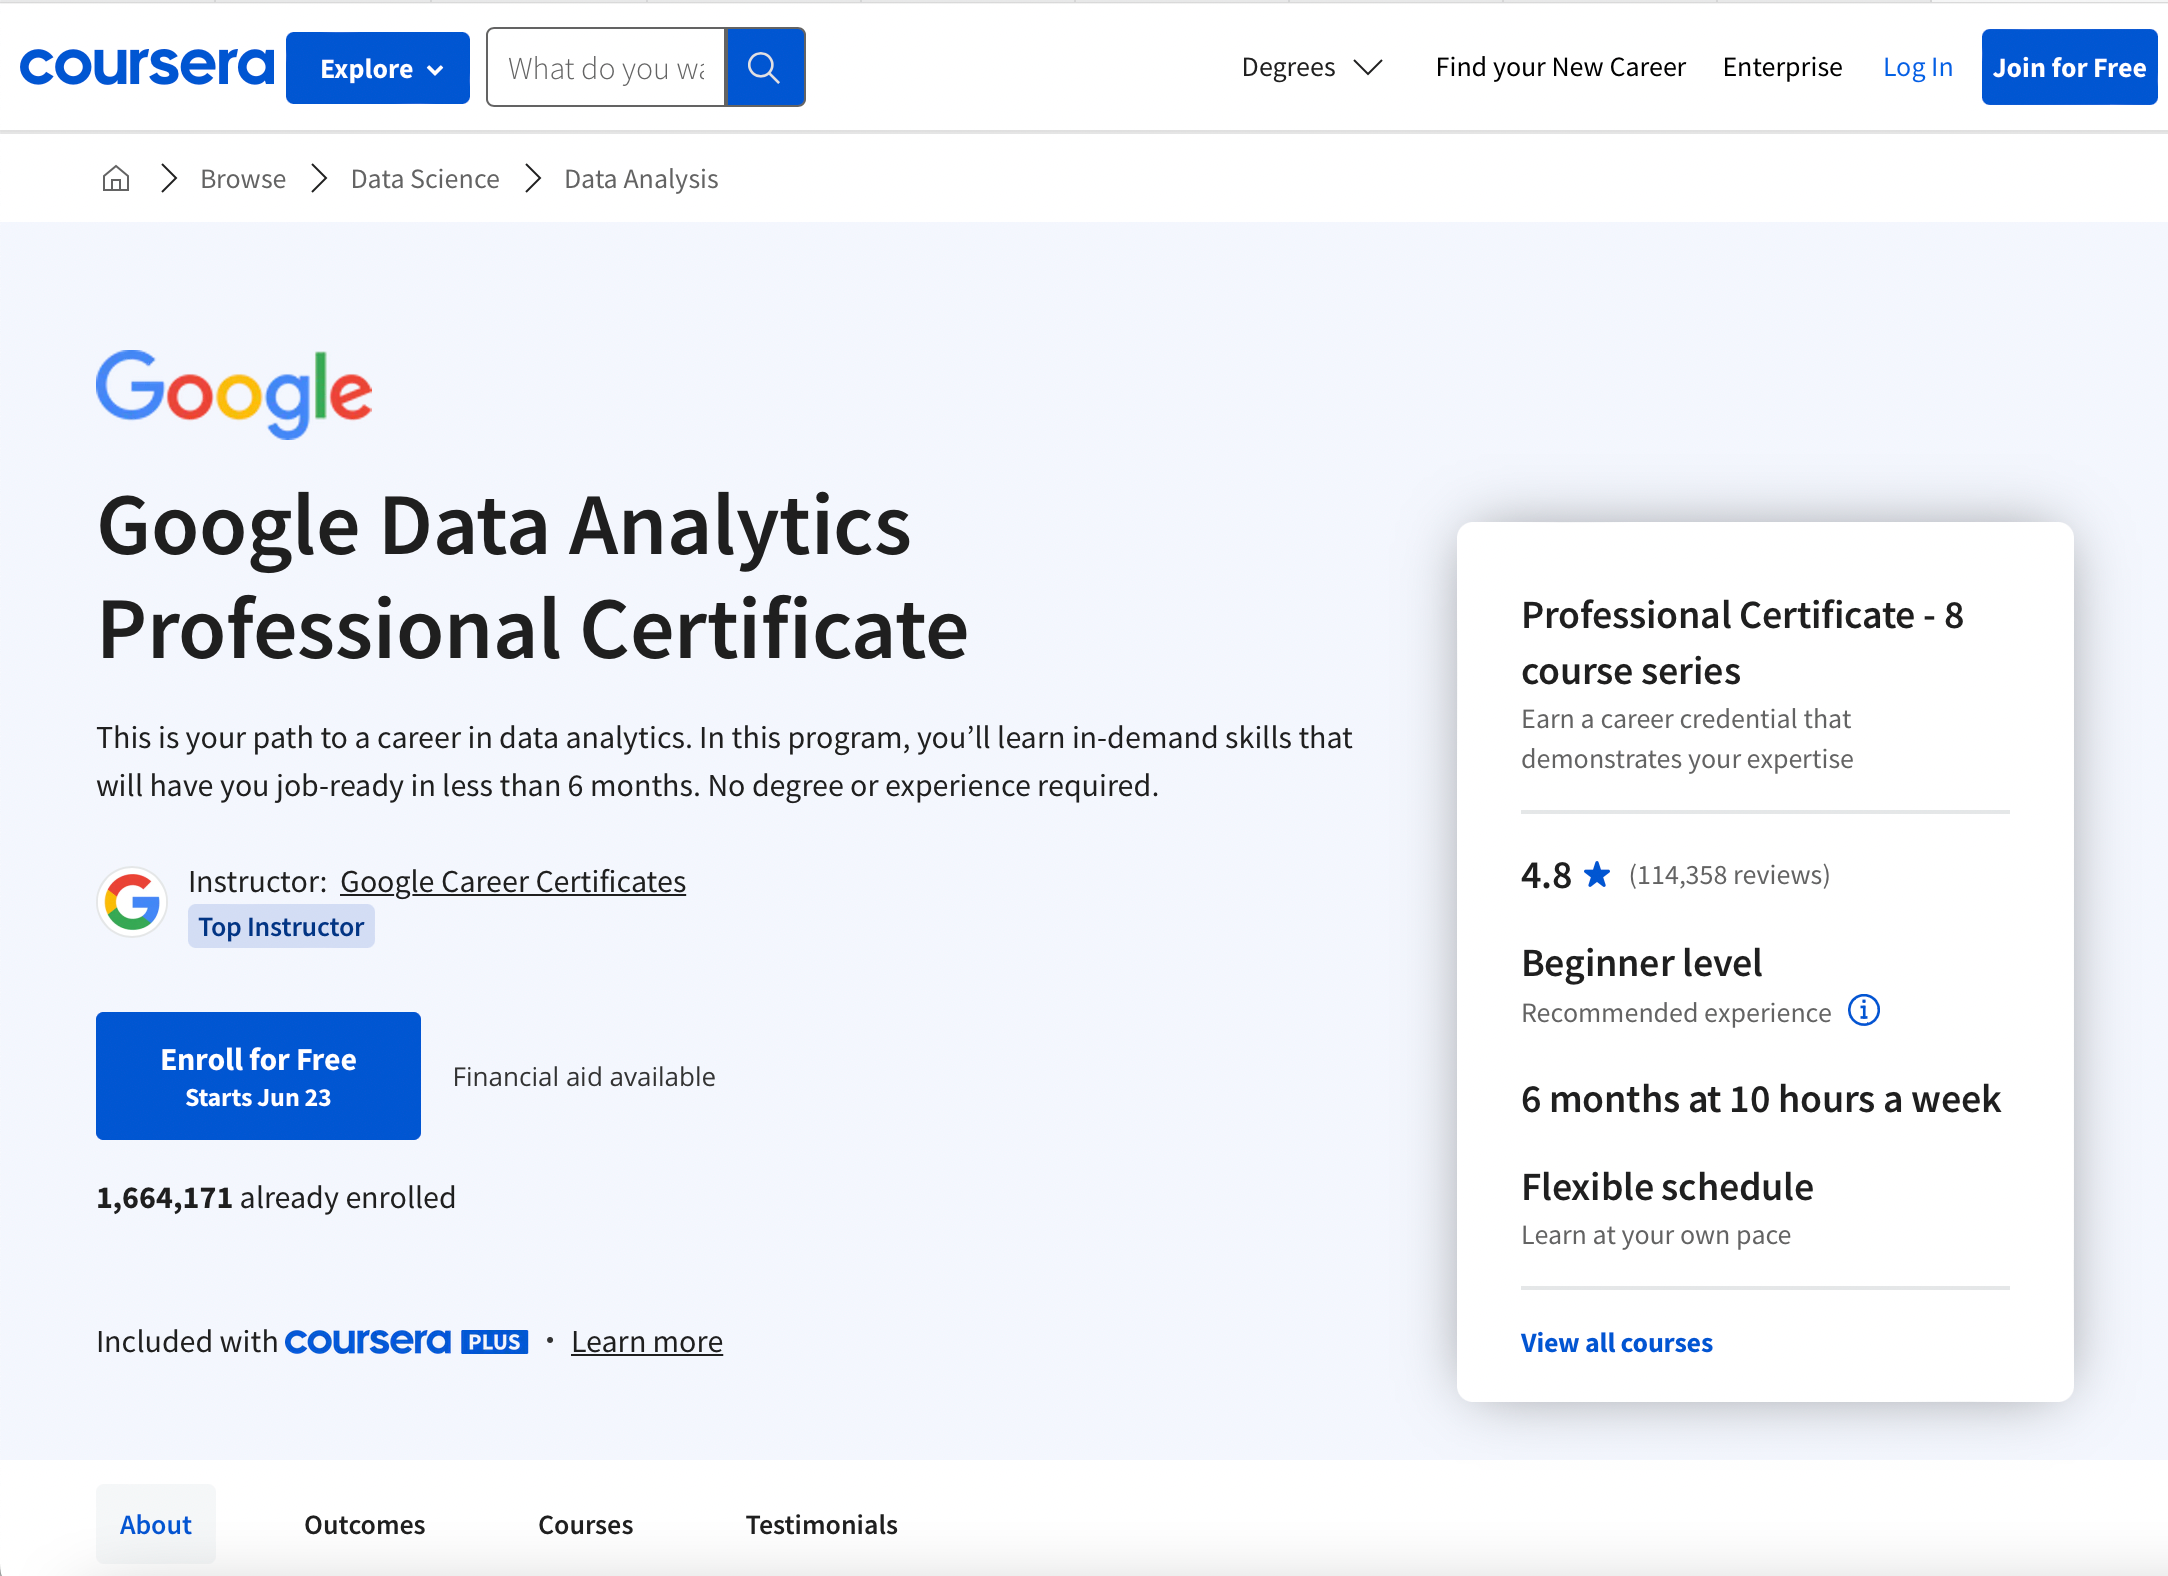 Google Data Analytics Professional Certificate homepage